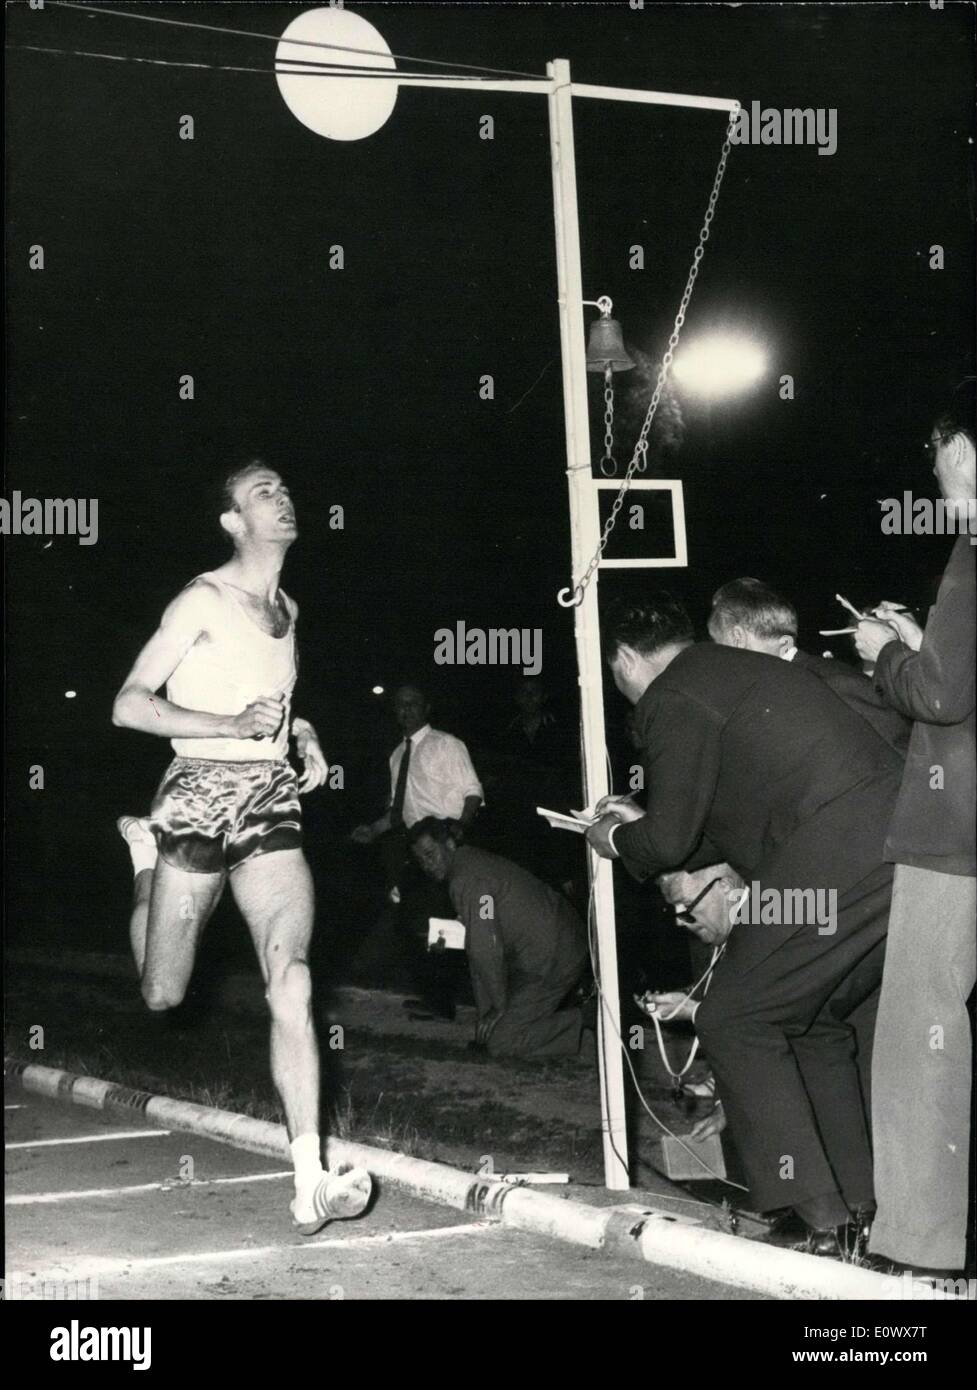 Juin 04, 1964 - Jean Wadoux bat 1 000 mètres Enregistrement : hier soir à la réunion d'athlétisme internationale Saint Maur, France Jean Wadoux, l'un des plus sérieux concurrent aux Jeux Olympiques cette année, a battu le record de 1 000 mètres qui a eu lieu par son enseignant et son coéquipier Michel Jazy par 5 dixièmes de seconde en 2'18''6. Jazy qui n'a pas pu faire la course a crié encouragements à son élève et était l'un des premiers à le féliciter après l'annonce de l'enregistrement. Photo montre Jean Wadoux passant la ligne d'arrivée. Banque D'Images